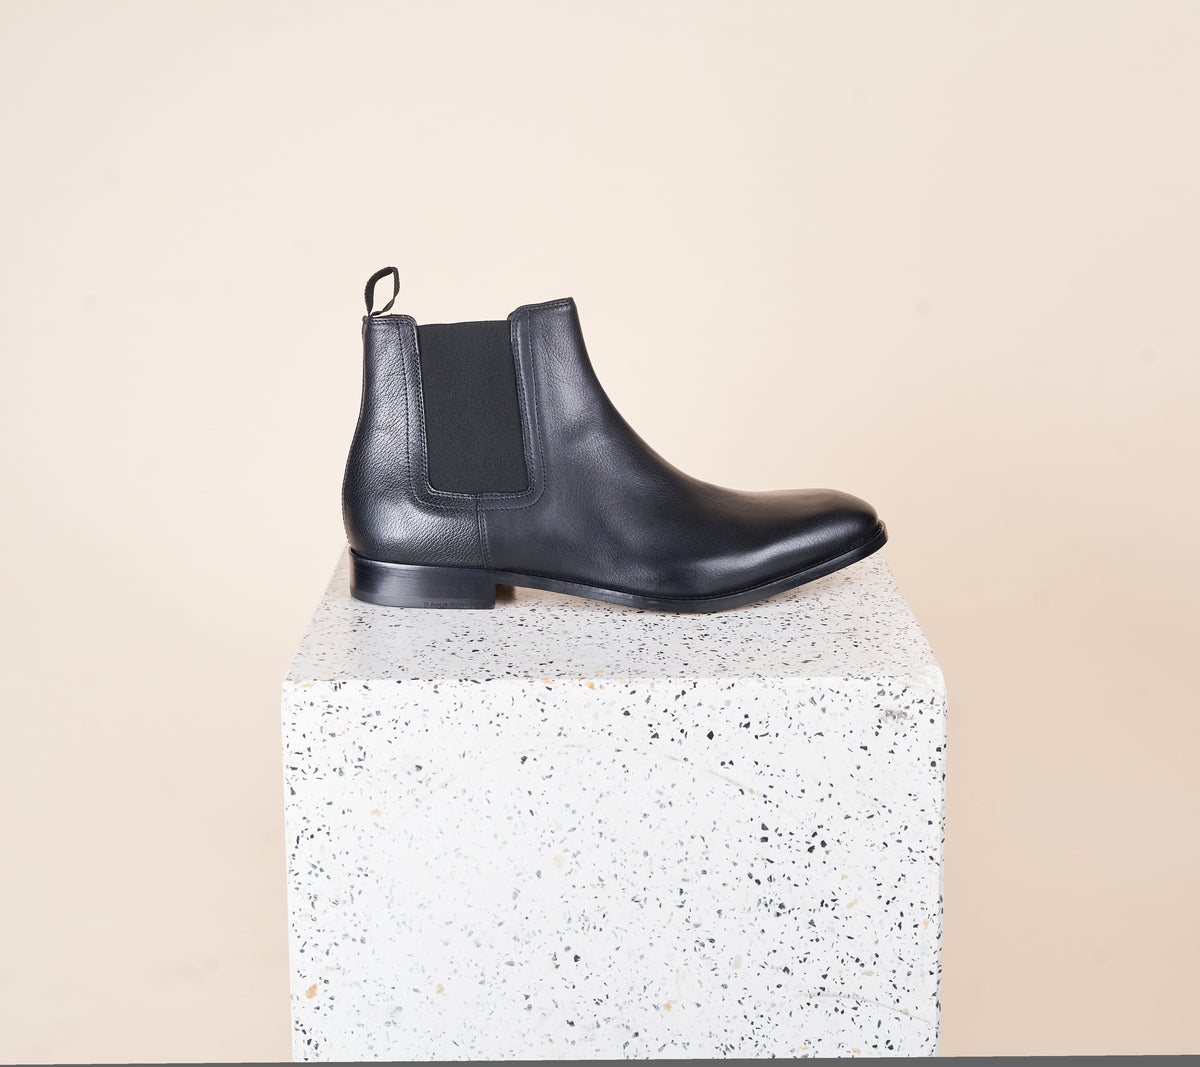 H&M Men's Black Chelsea Boots